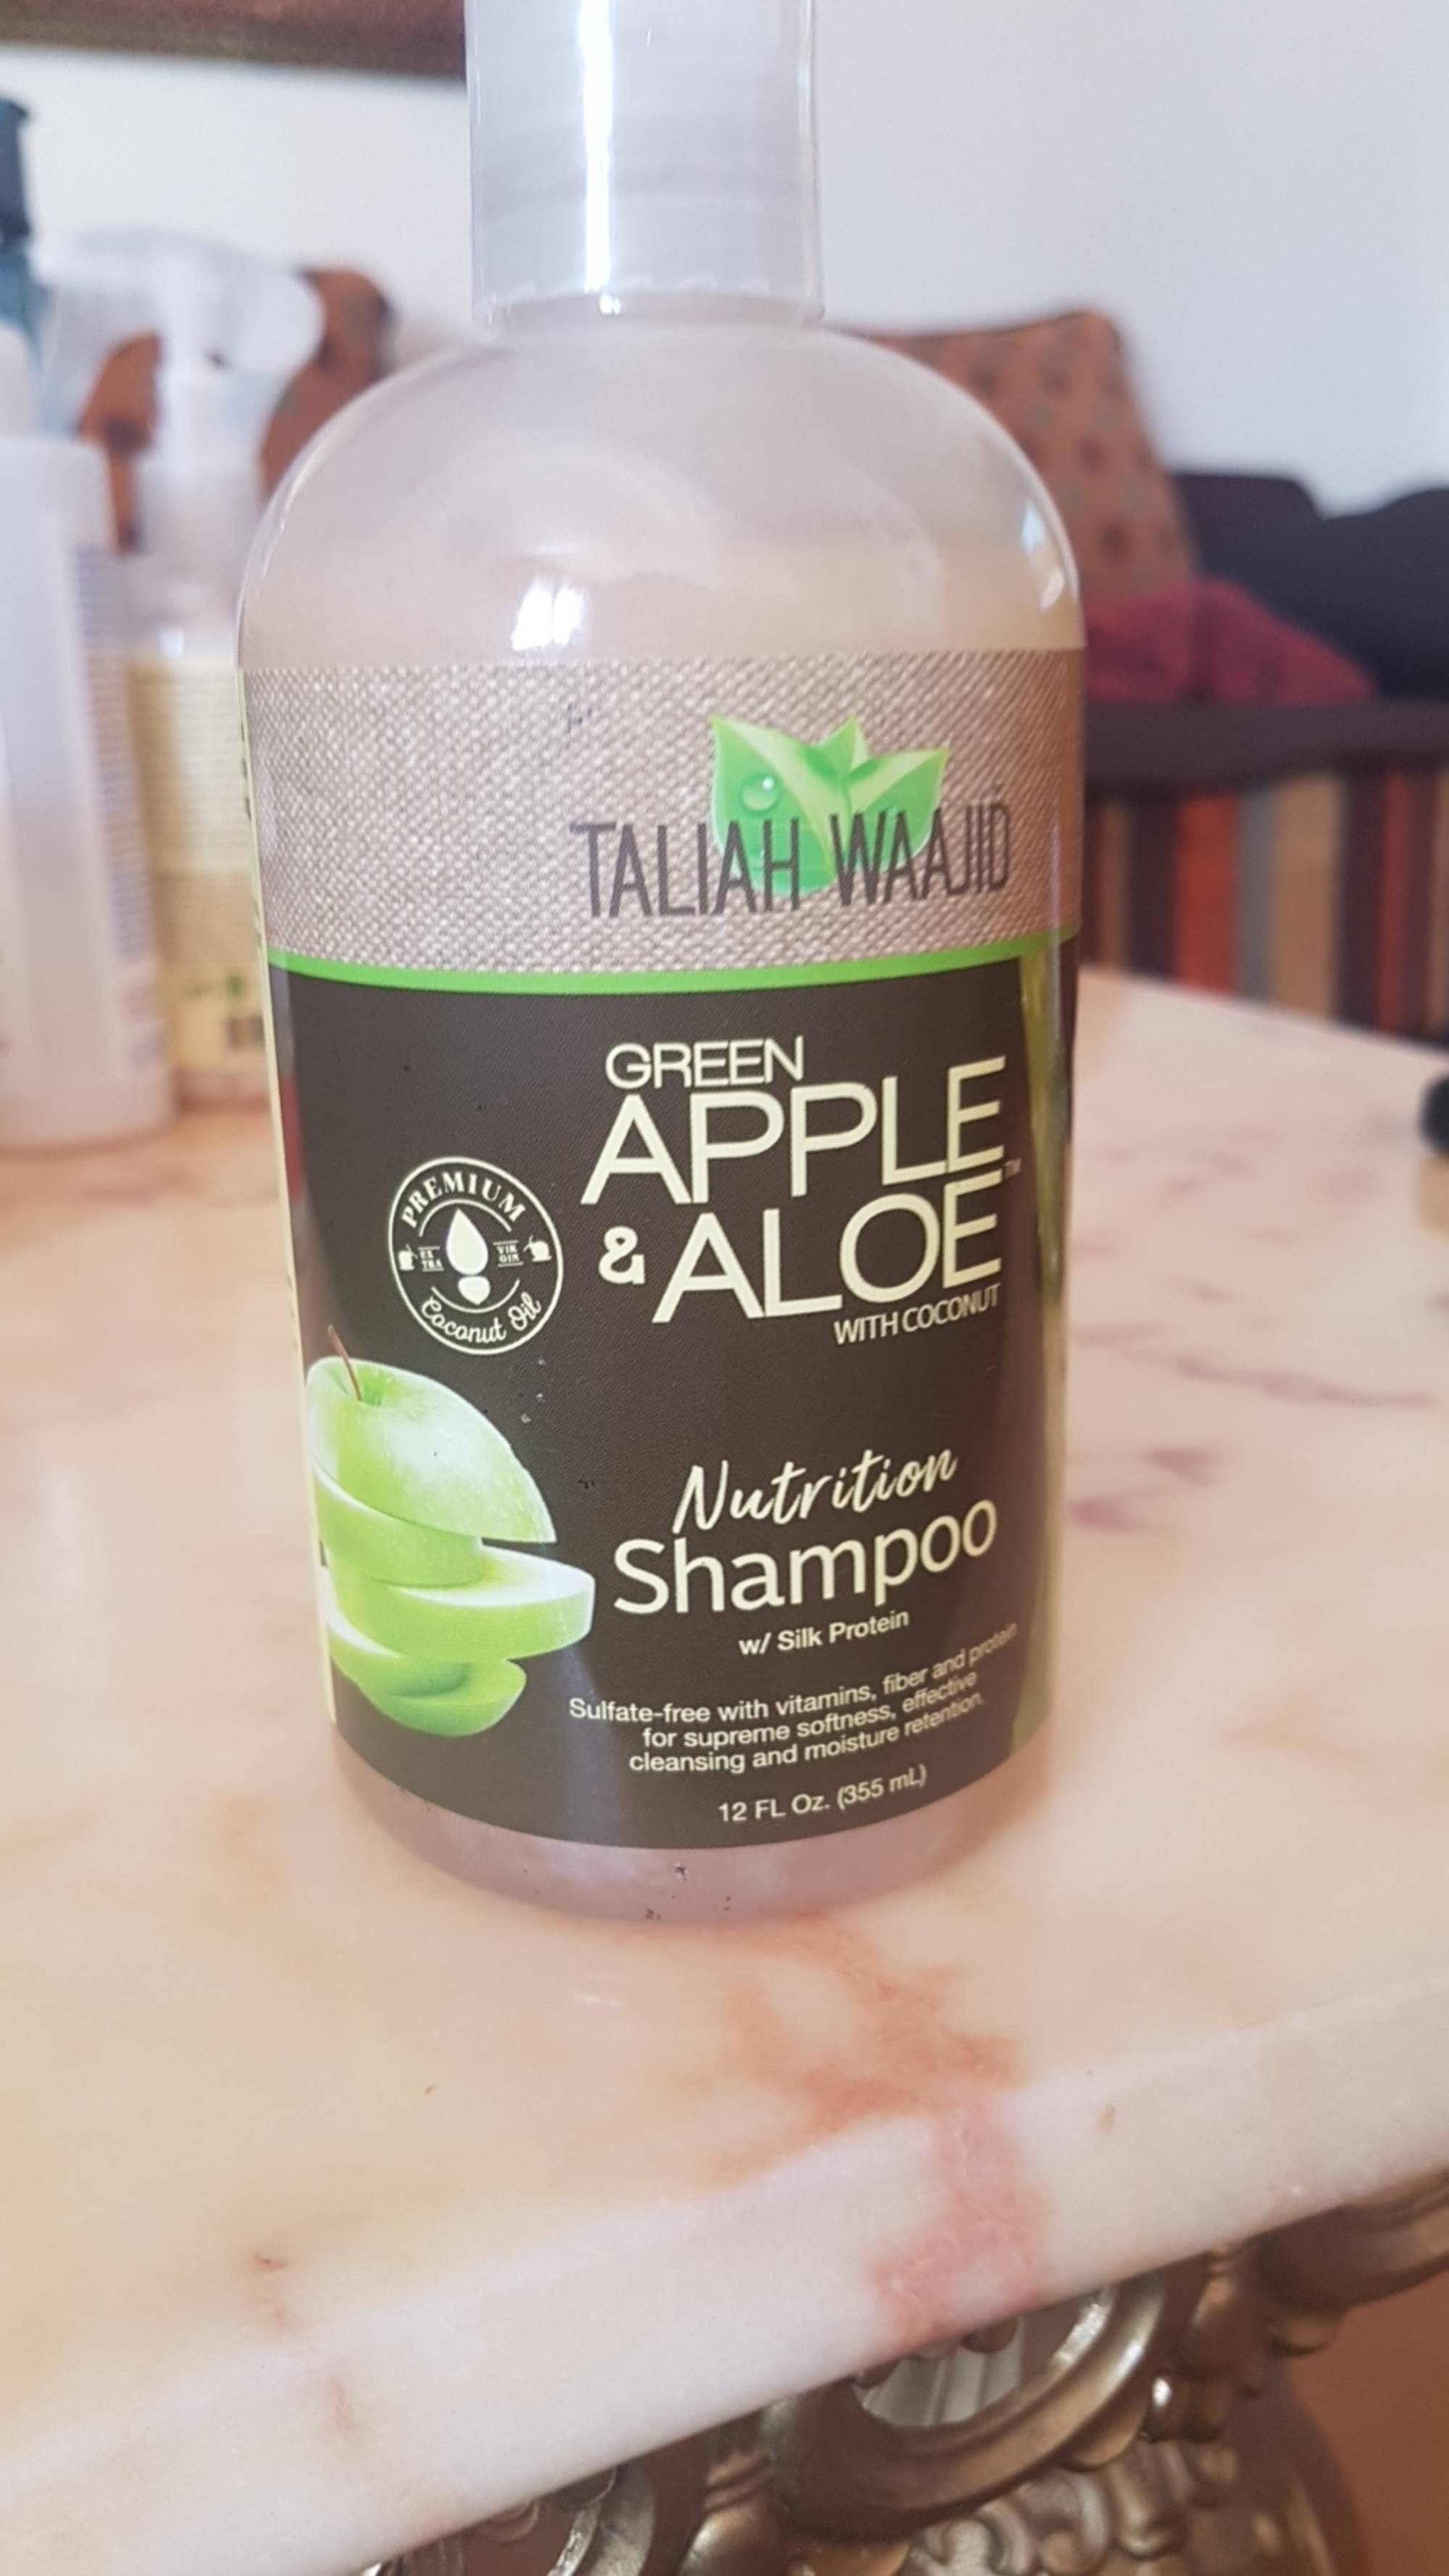 TALIAH WAAJID - Green apple & aloe - Nutrition shampoo